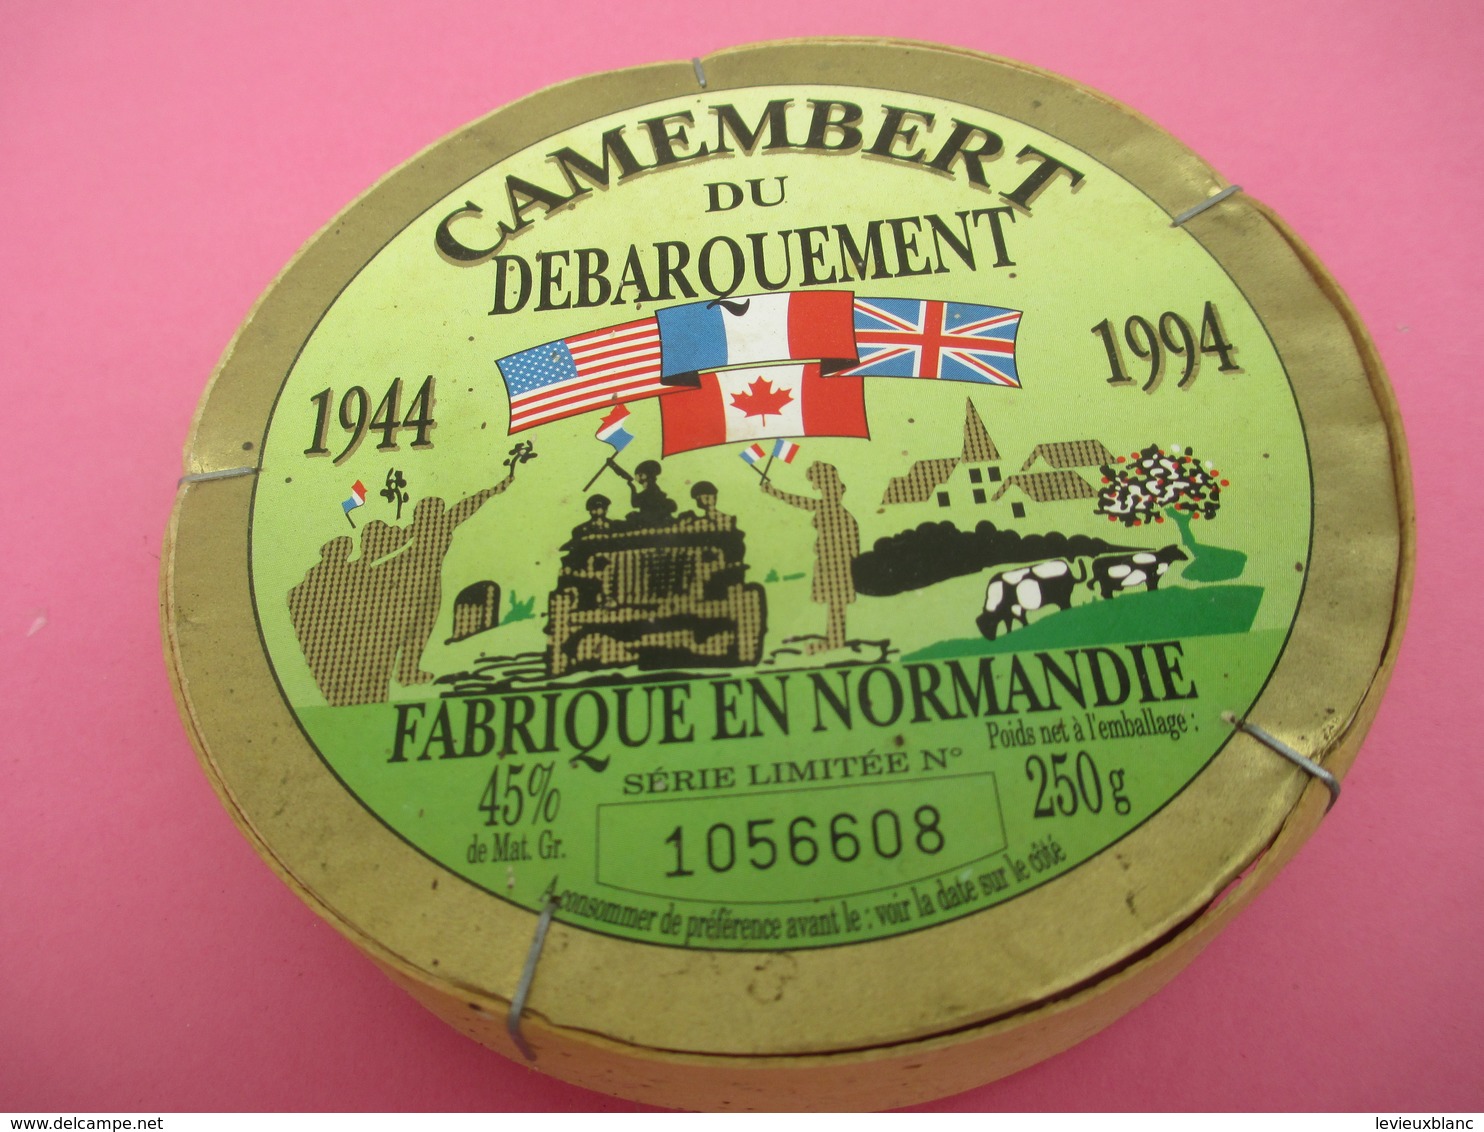 Boite De Camenbert Vide Mais Entière/Camenbert Du DEBARQUEMENT/Cinquantenaire/ Fabriqué En Normandie/1994      FROM44 - Formaggio